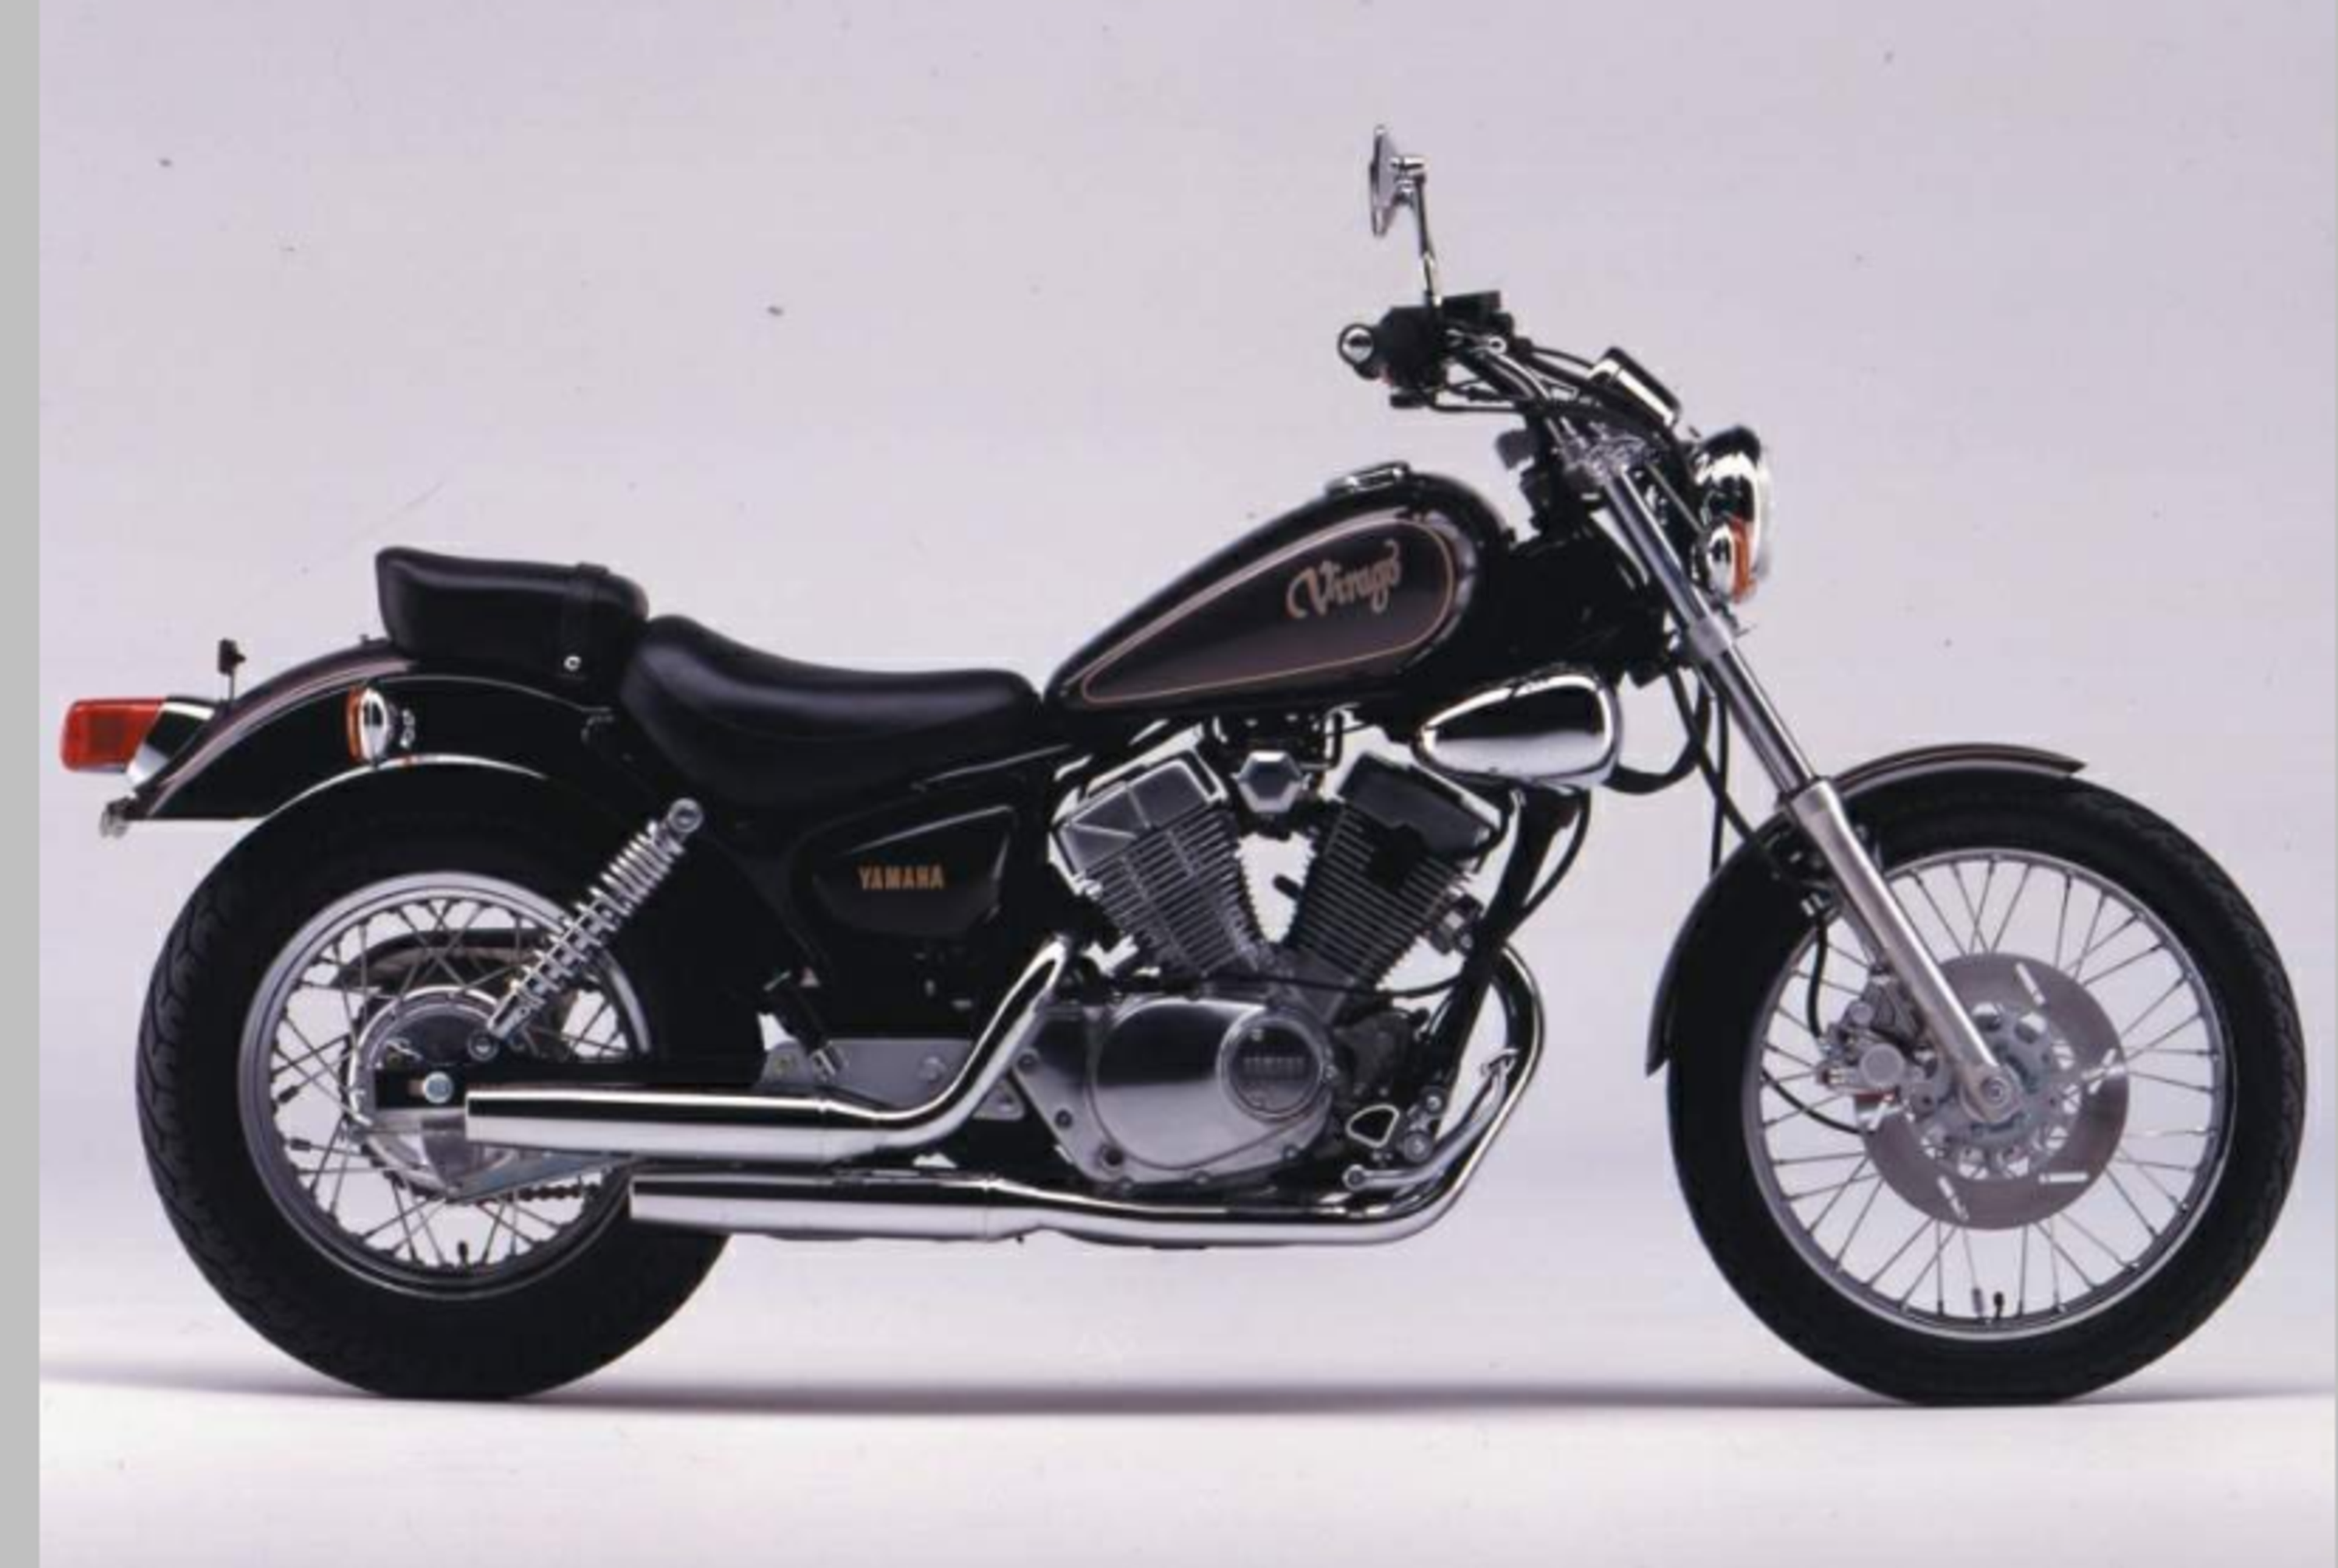 Yamaha XV 250 XV 250 Virago (1989 - 93)